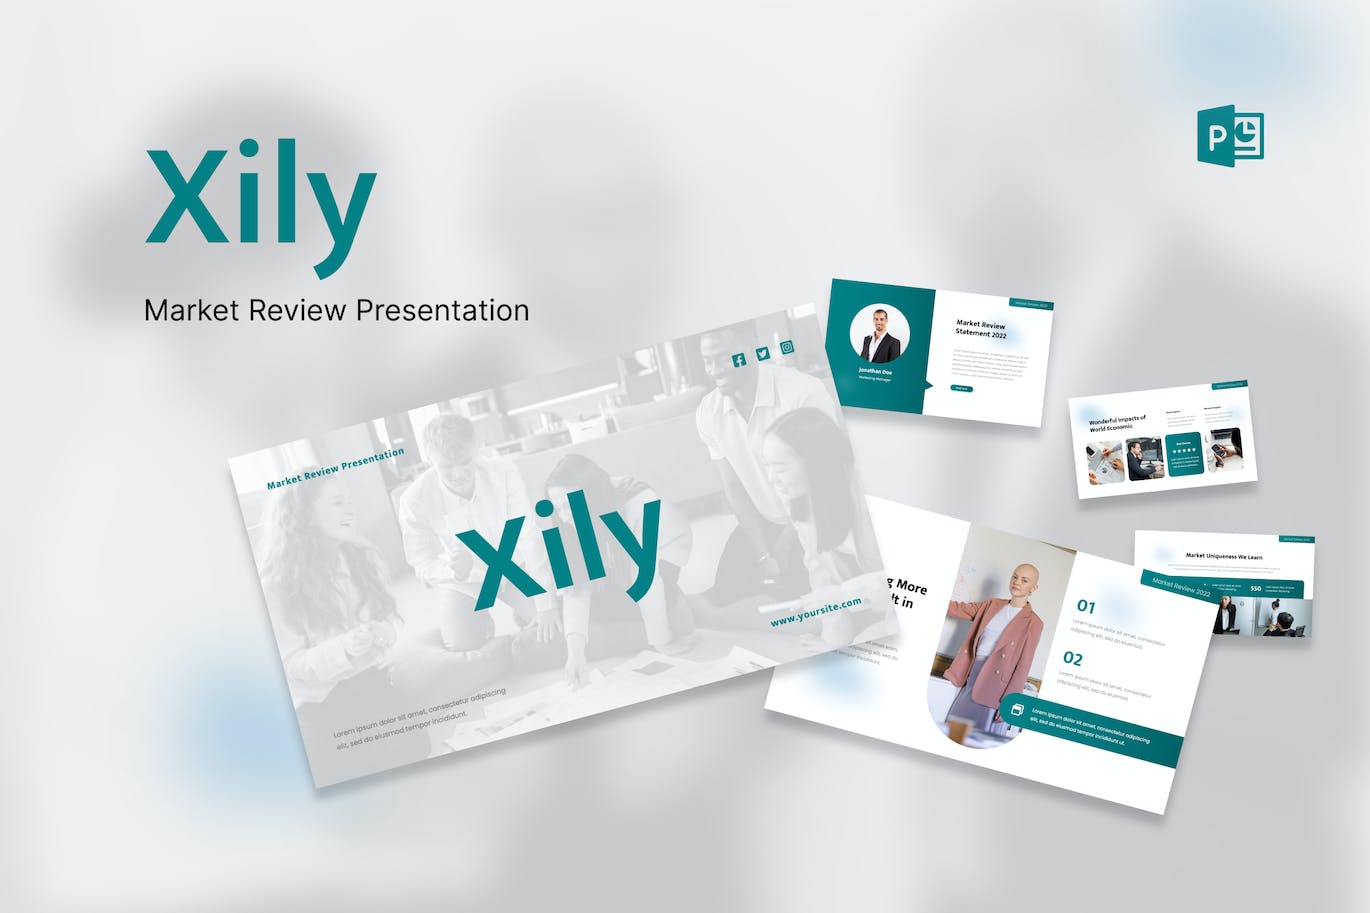 市场回顾PowerPoint演示模板 Xily – Market Review PowerPoint Template 幻灯图表 第1张